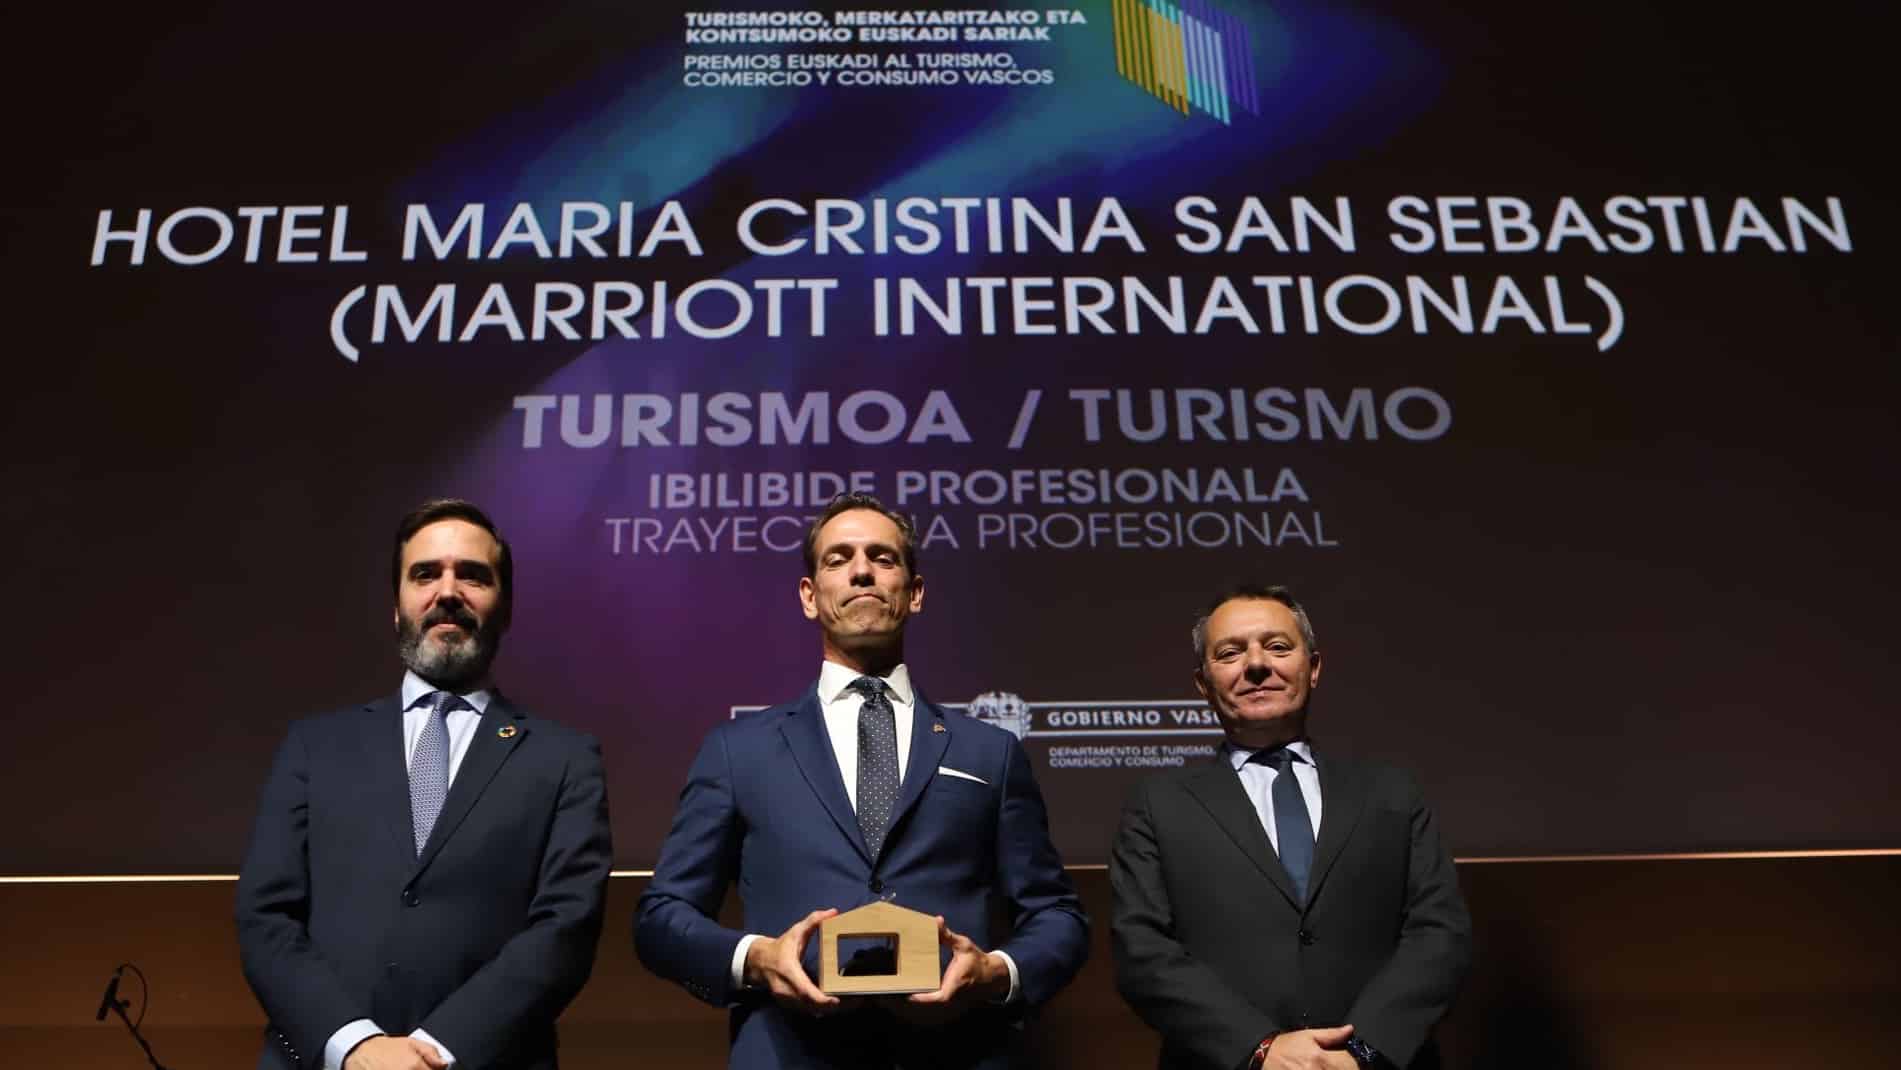 Hotel Maria Cristina - Casa Munoa, Loco Polo y Hotel María Cristina en los Premios de Turismo y Comercio